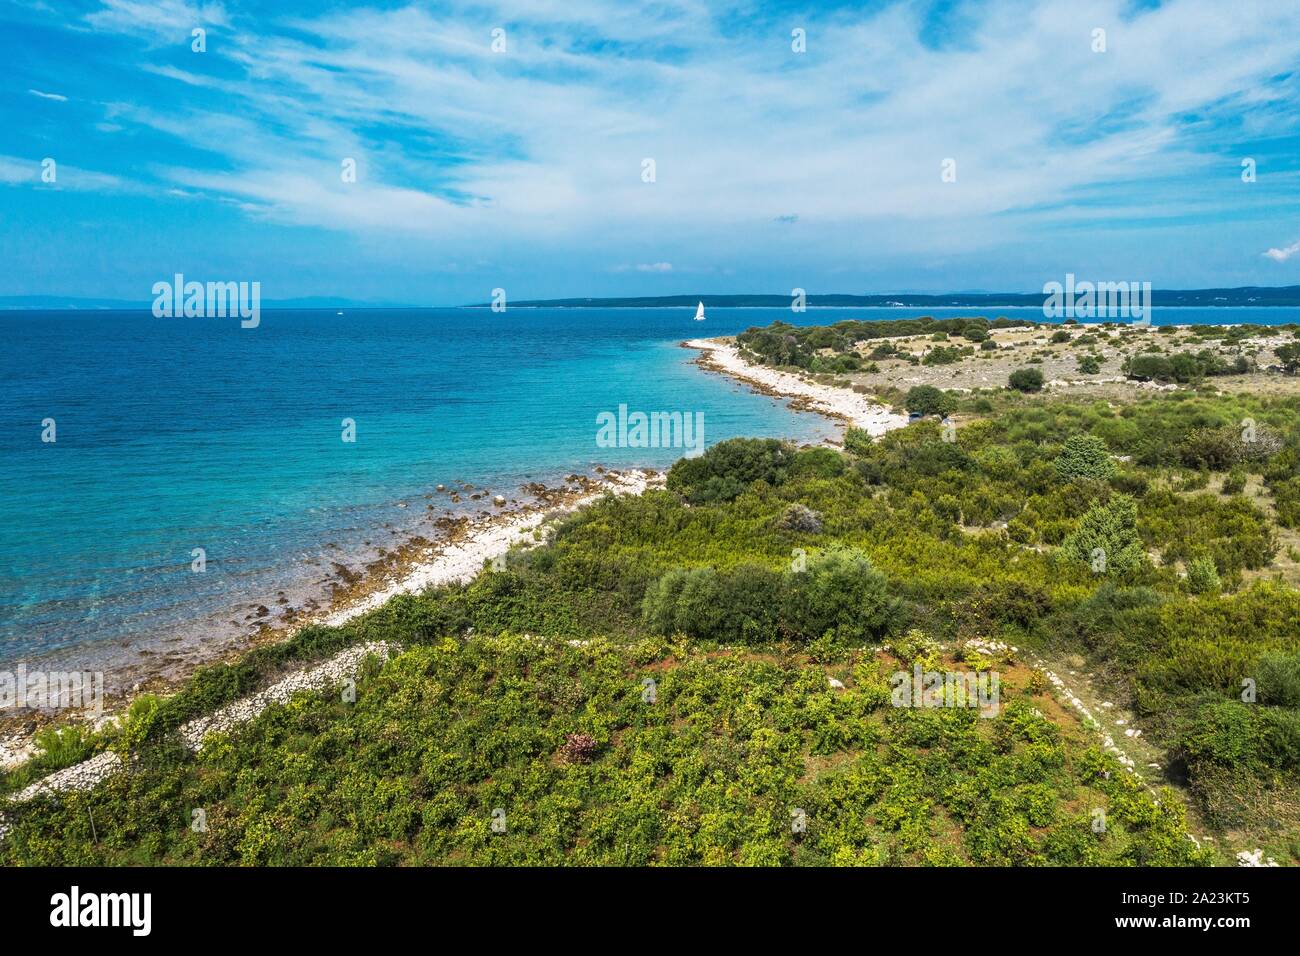 Village de LUN, île de Pag plage pittoresque Photo aérienne. Lika Senj County, Croatie. Paysage méditerranéen. Banque D'Images